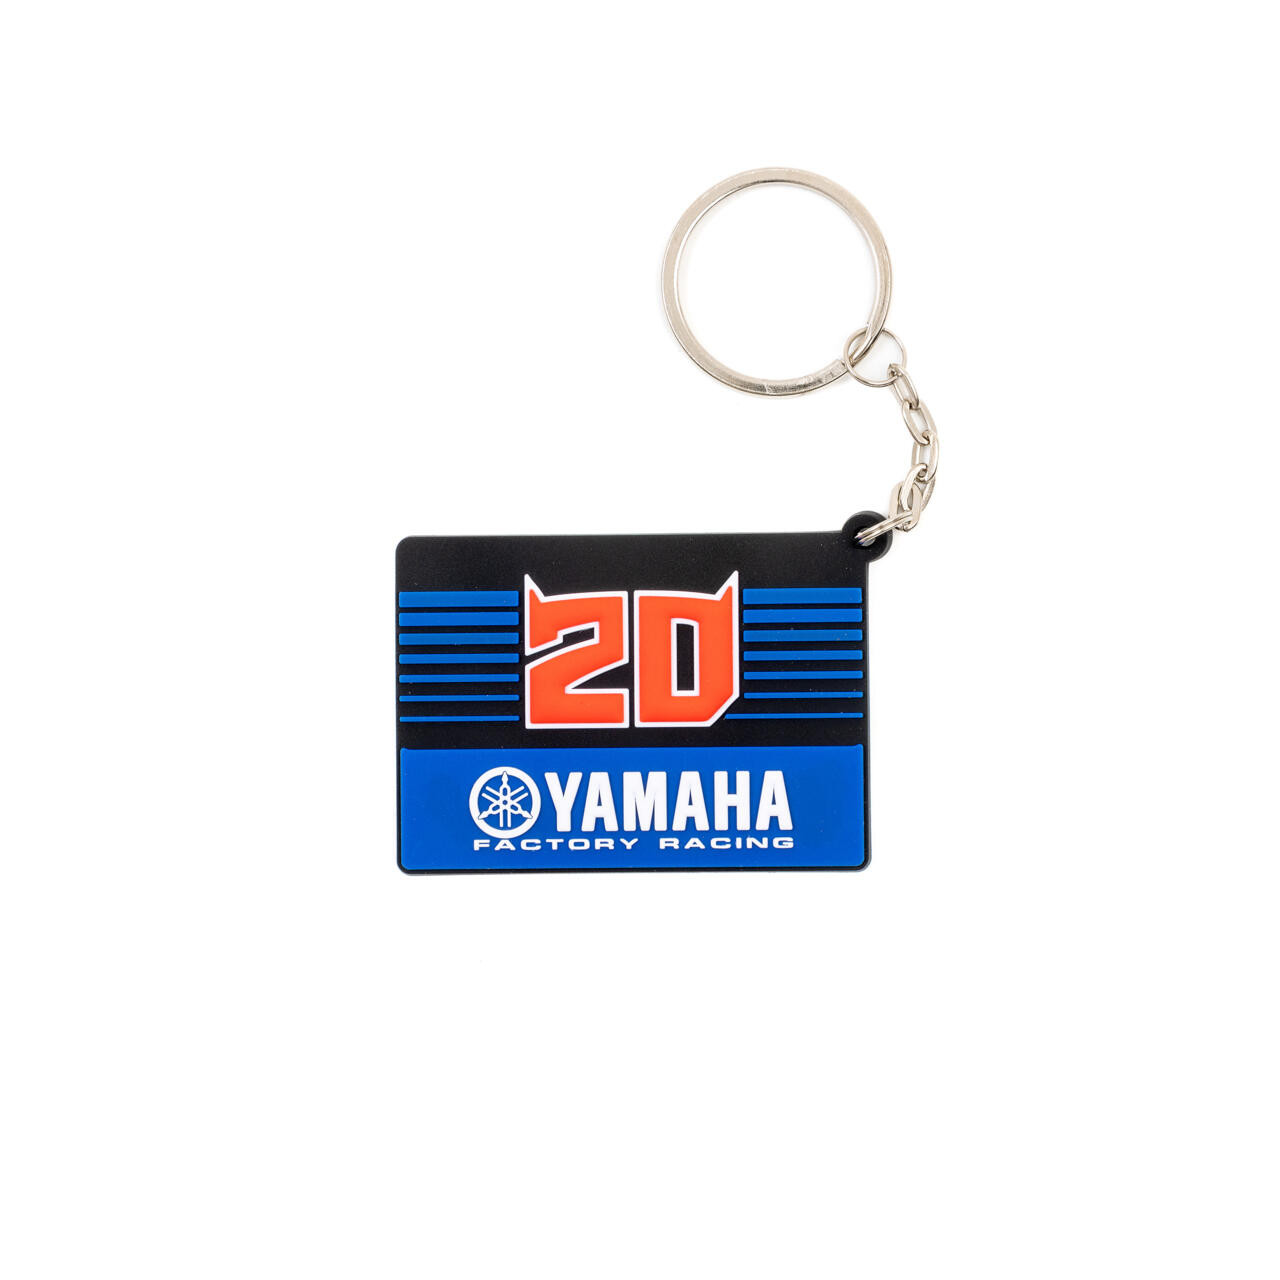 Porte-clés tour de cou YAMAHA Racing bleu